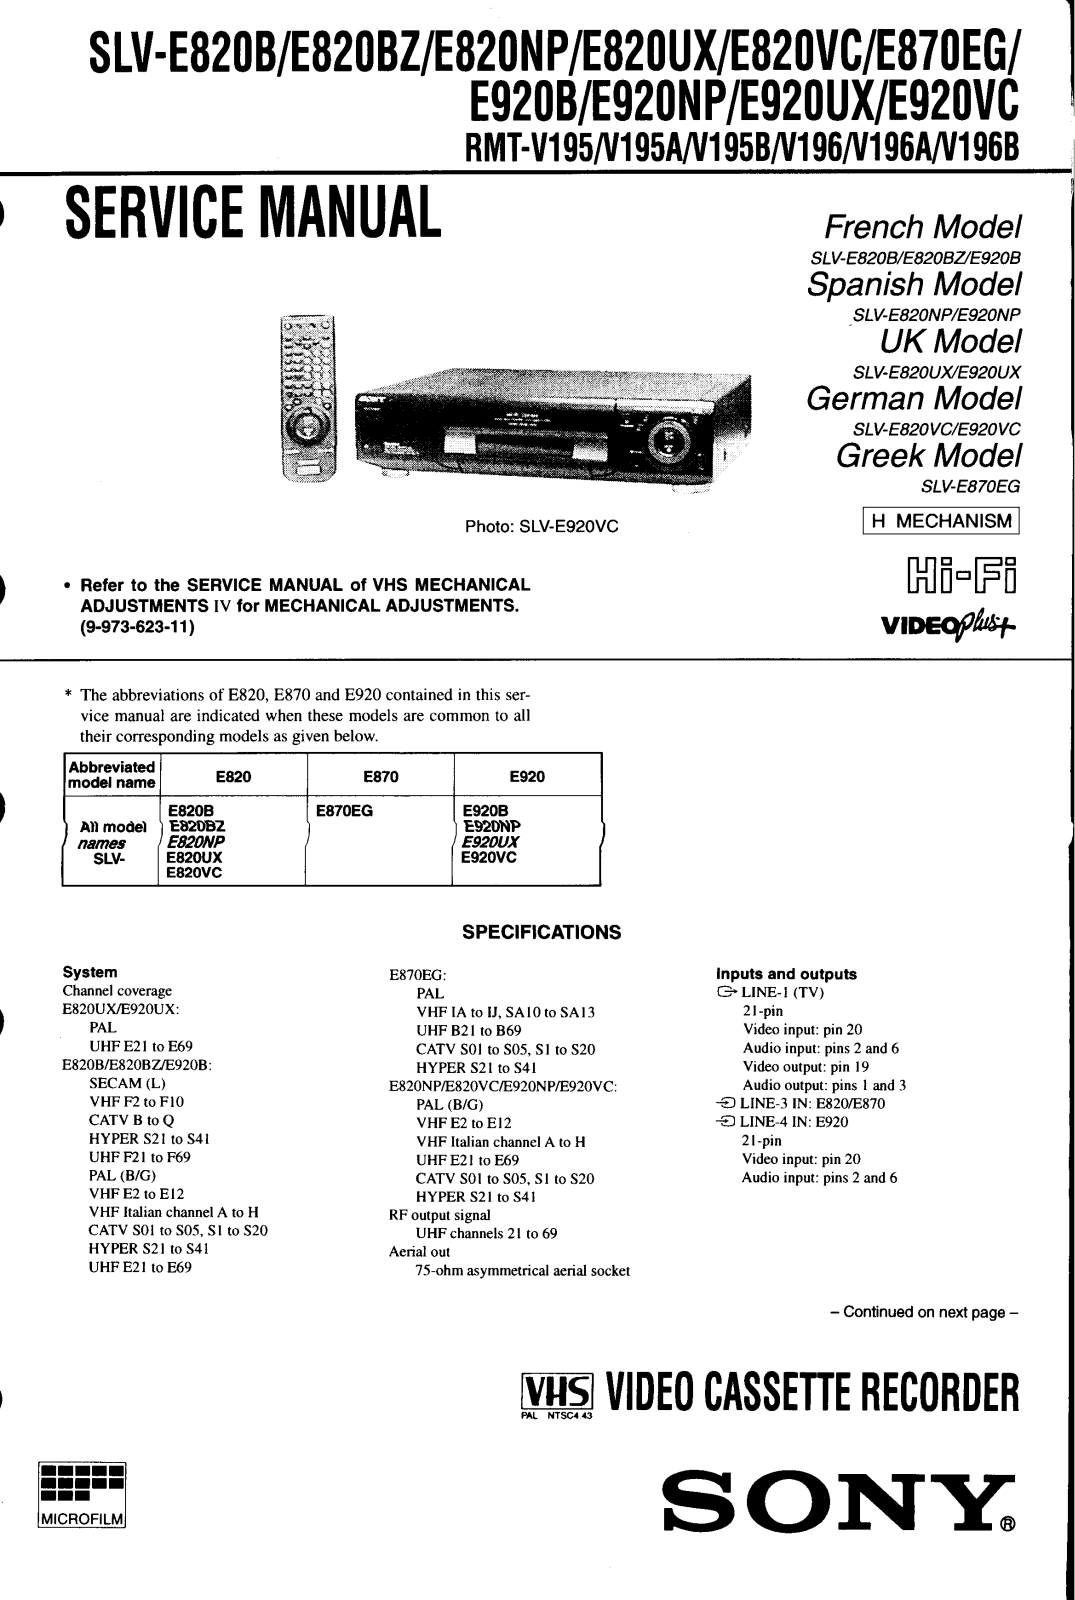 SONY Slv-e820, Slv-e870, Slv-e920 Service Manual